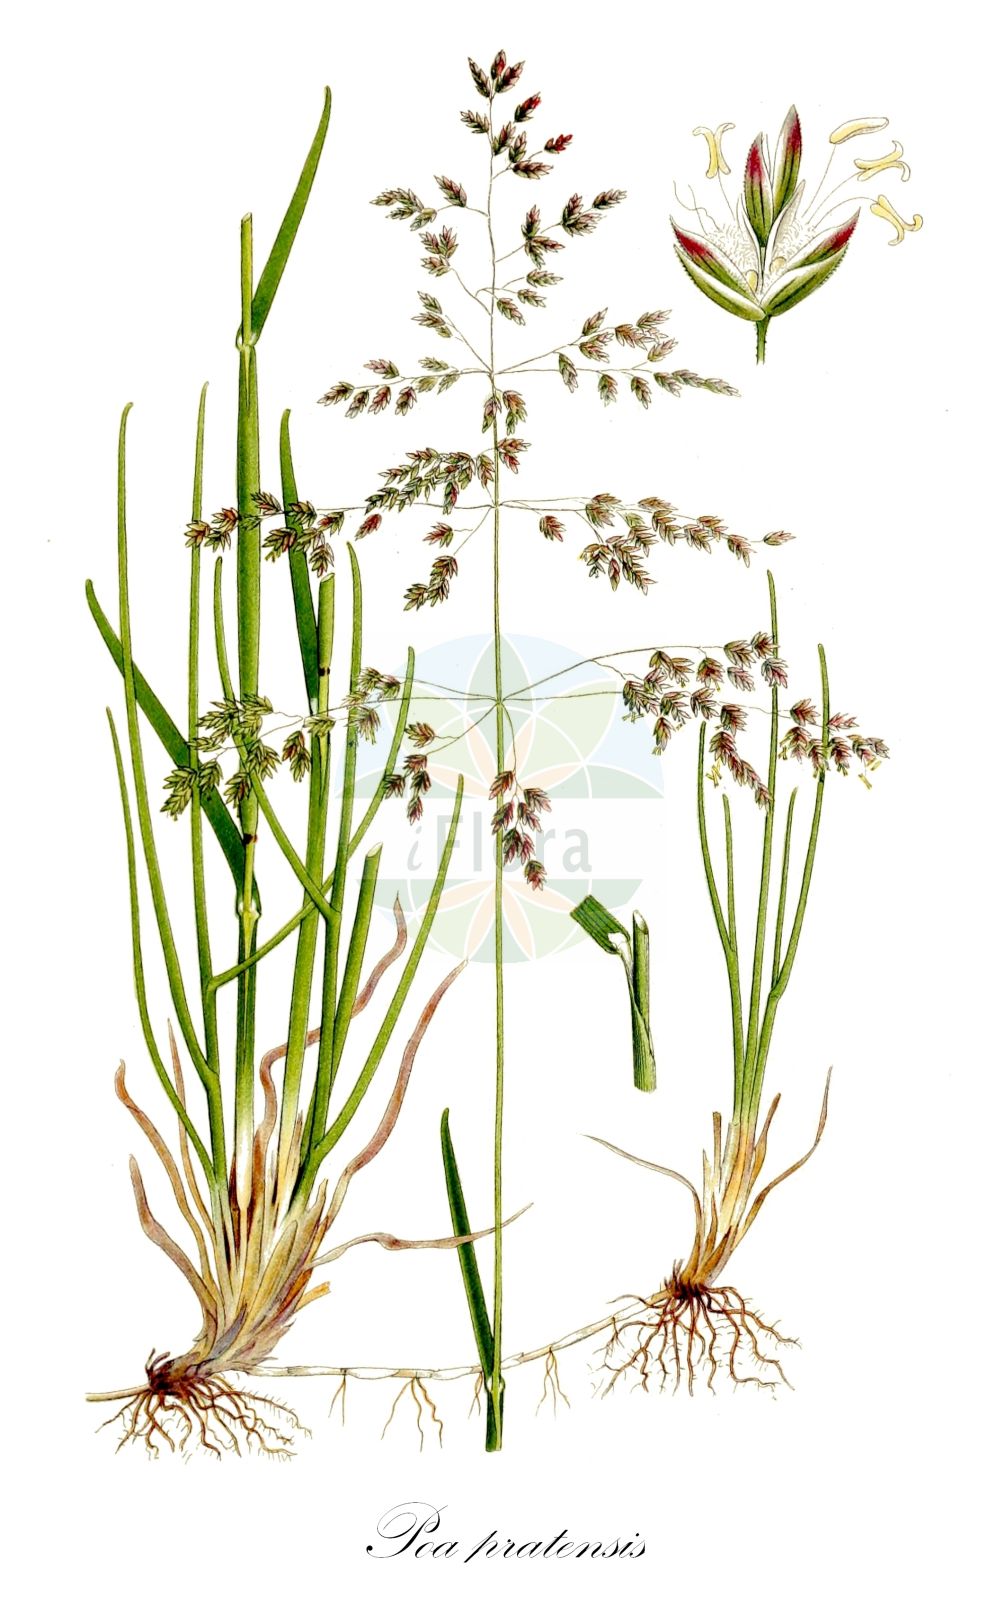 Historische Abbildung von Poa pratensis (Wiesen-Rispengras - Smooth Meadow-grass). Das Bild zeigt Blatt, Bluete, Frucht und Same. ---- Historical Drawing of Poa pratensis (Wiesen-Rispengras - Smooth Meadow-grass). The image is showing leaf, flower, fruit and seed.(Poa pratensis,Wiesen-Rispengras,Smooth Meadow-grass,Poa attica,Poa pinegensis,Poa pratensis,Poa pratensis subsp. attica,Wiesen-Rispengras,Smooth Meadow-grass,Birdgrass,June Grass,Kentucky Bluegrass,Meadowgrass,Smooth-stalked Meadowgrass,Poa,Rispengras,Bluegrass,Poaceae,Süßgräser,Grass family,Blatt,Bluete,Frucht,Same,leaf,flower,fruit,seed,Lindman (1901-1905))